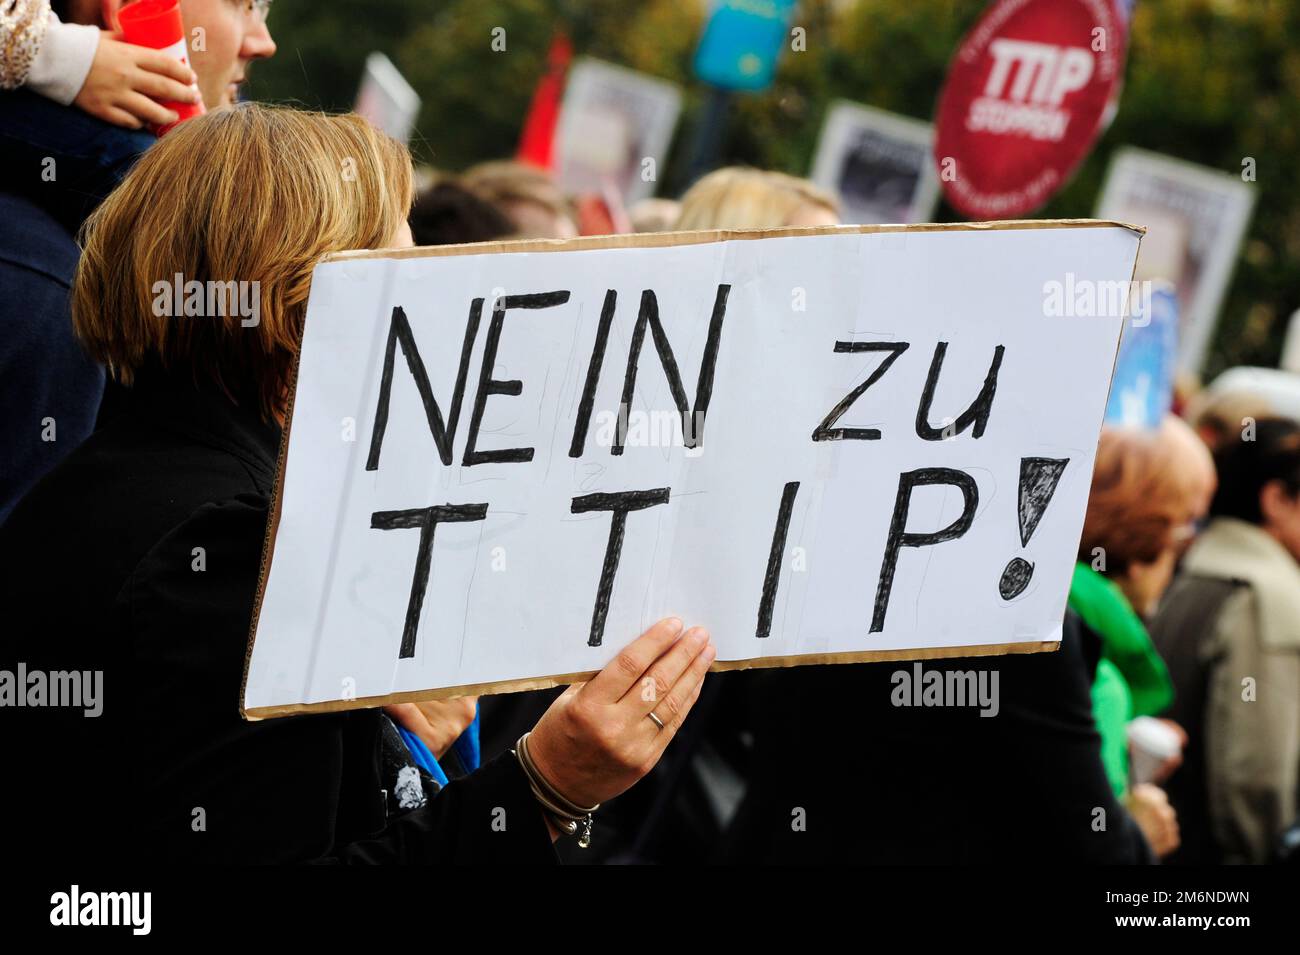 Wien, Österreich. 11. Oktober 2014. Demonstration gegen TTIP (Transatlantische Handels- und Investitionspartnerschaft) und CETA (umfassendes Wirtschafts- und Handelsabkommen) in Wien Stockfoto